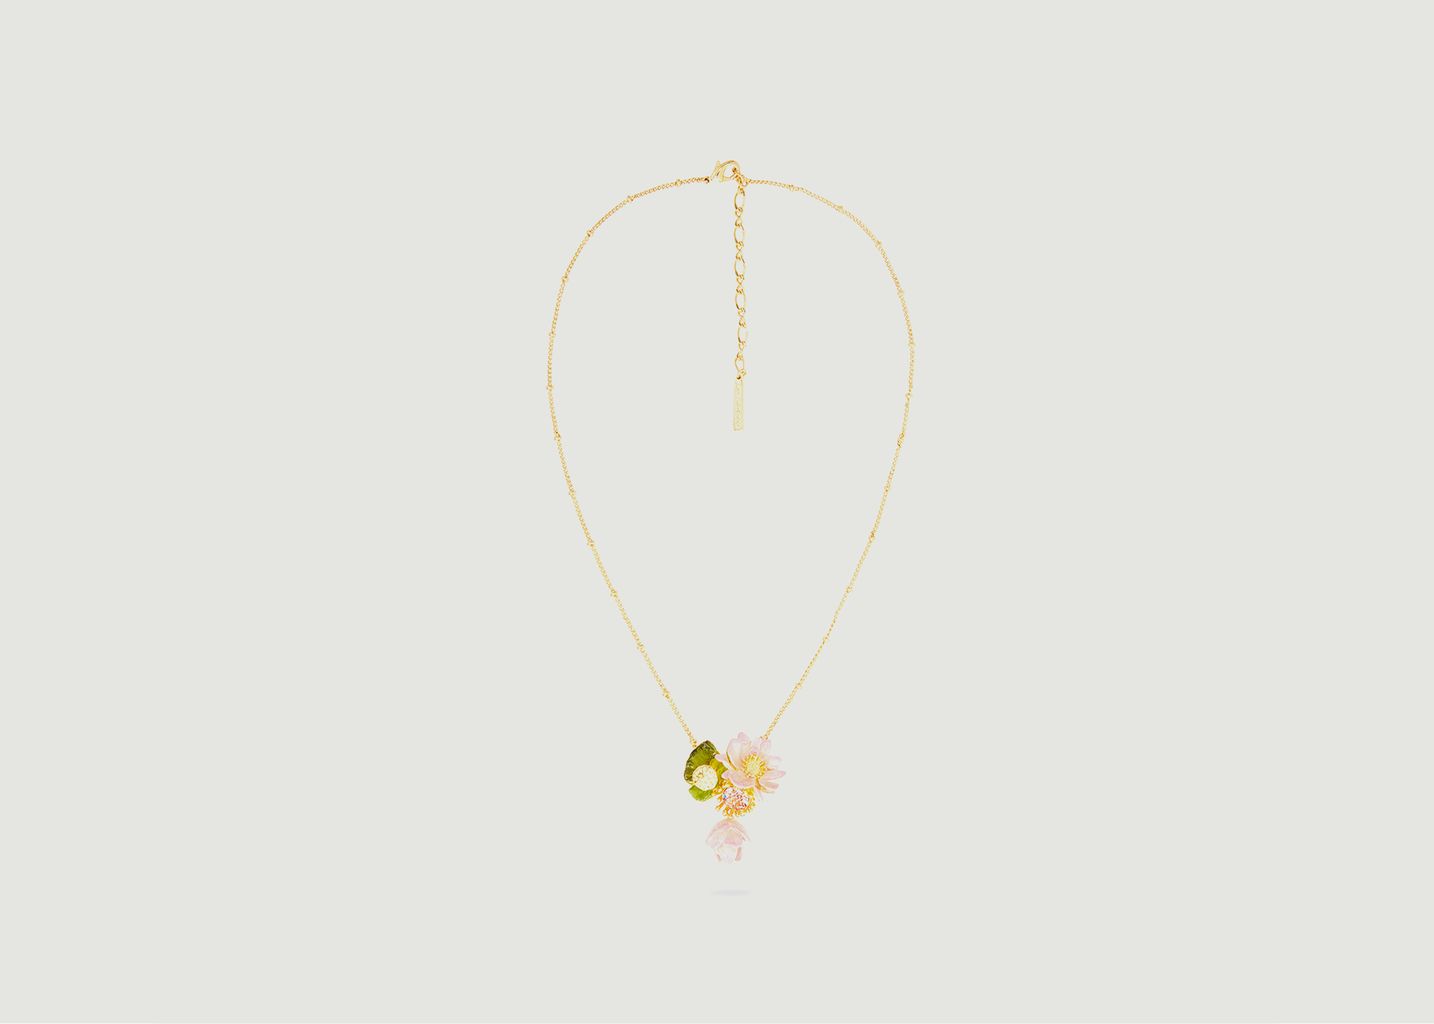 Fine necklace with lotus flower pendant - Les Néréides